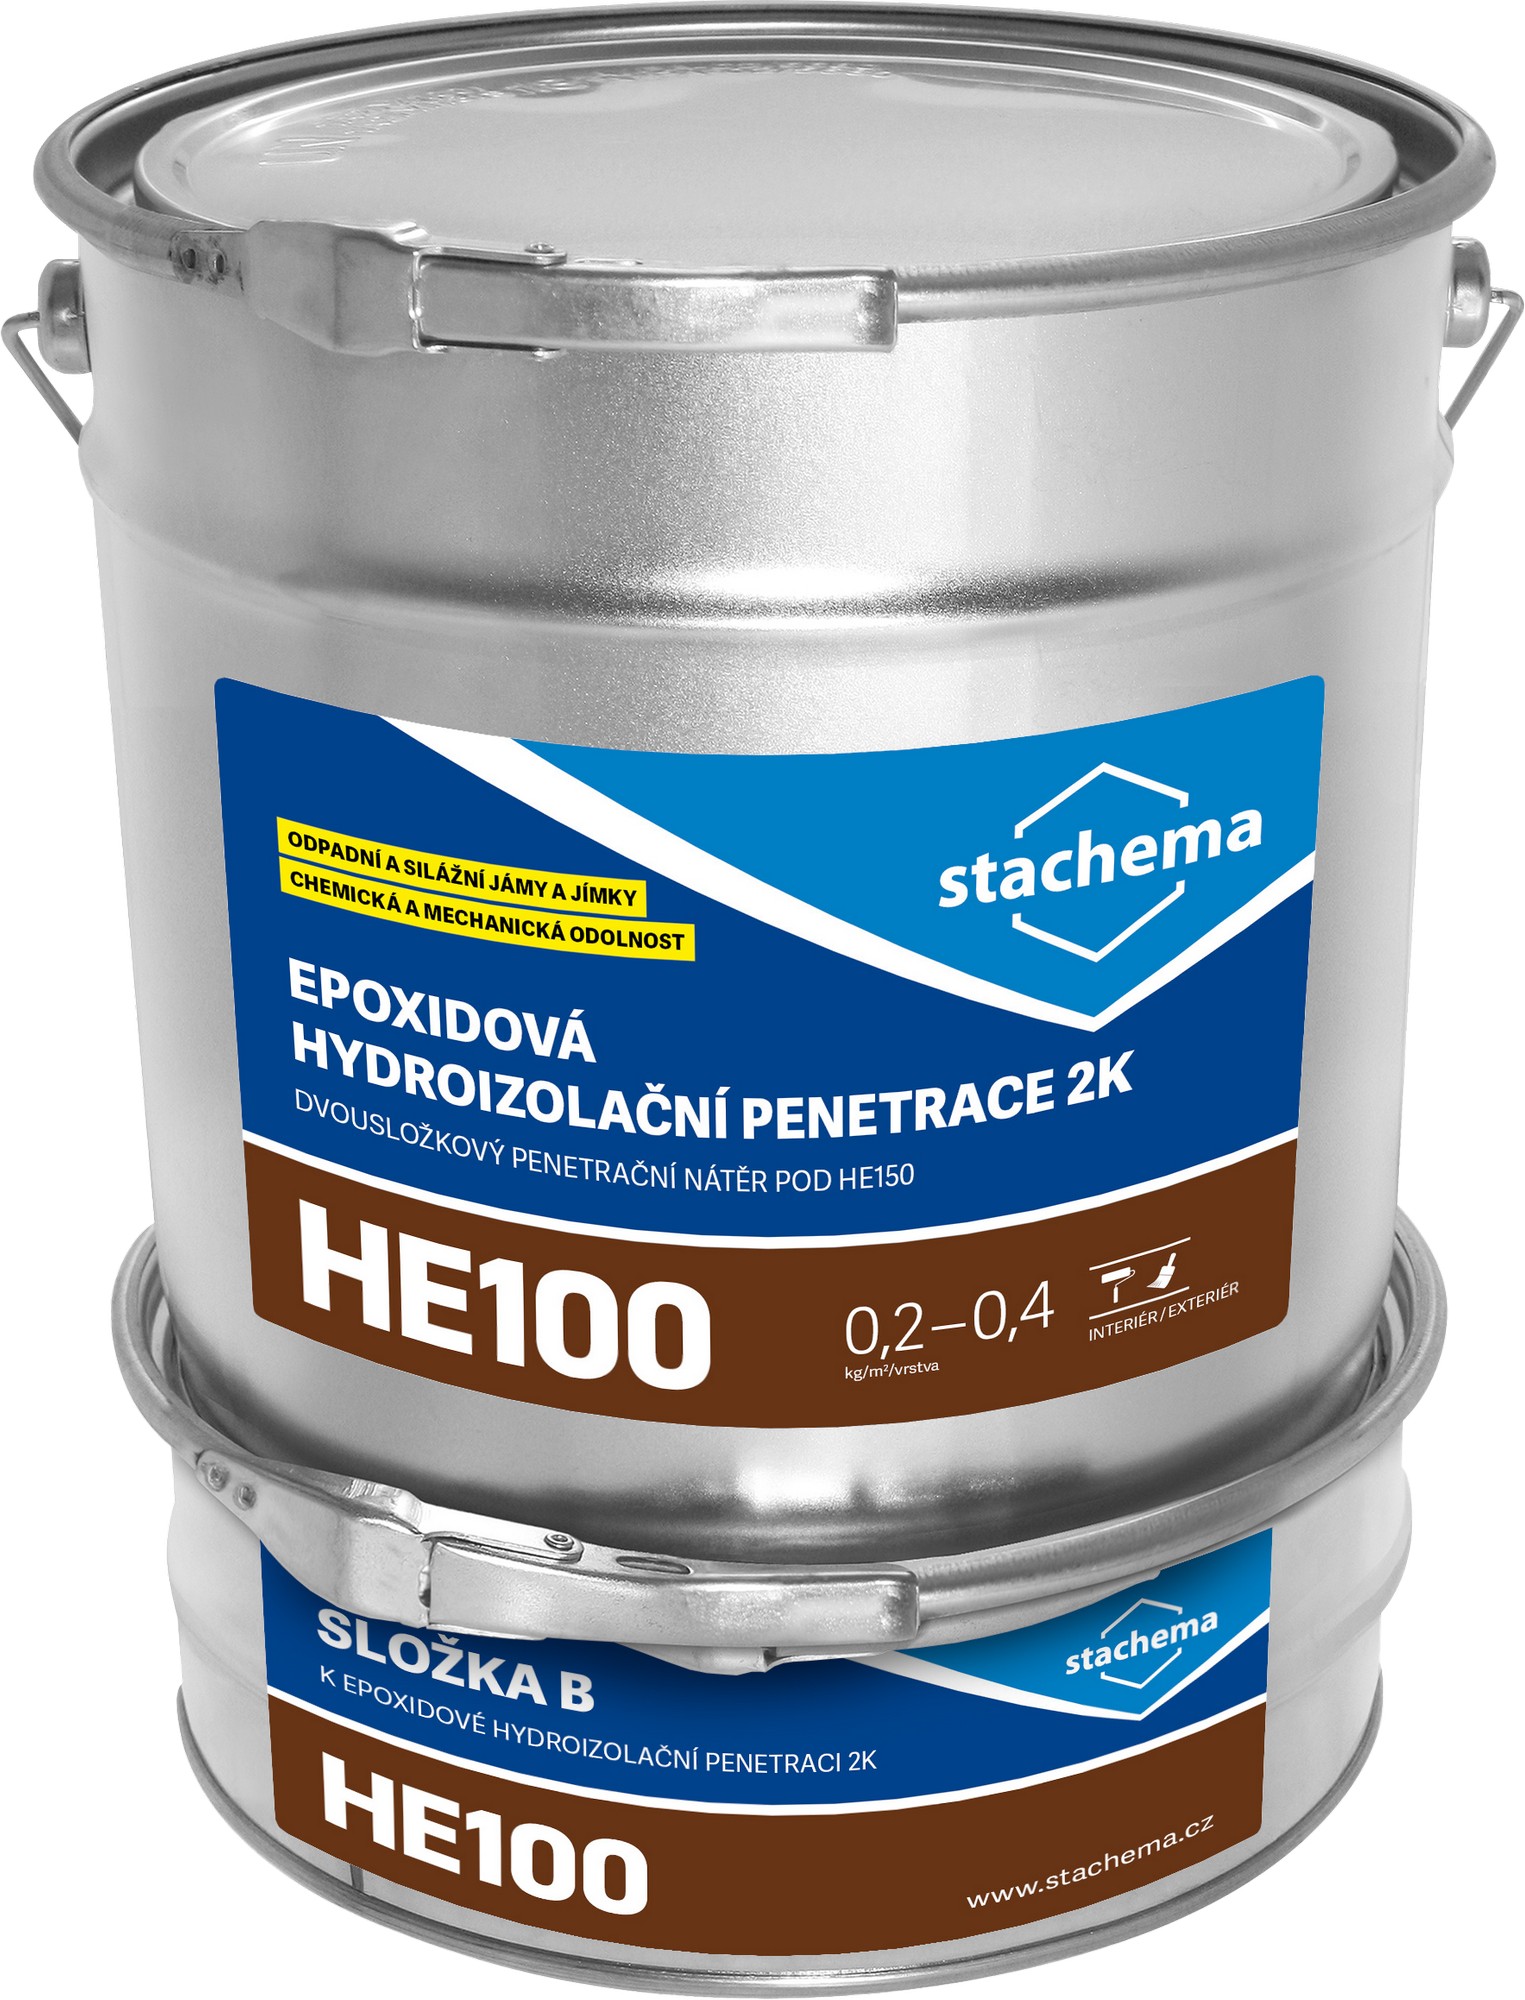 Penetrace epoxidová Stachema HE100 2k , 8 kg